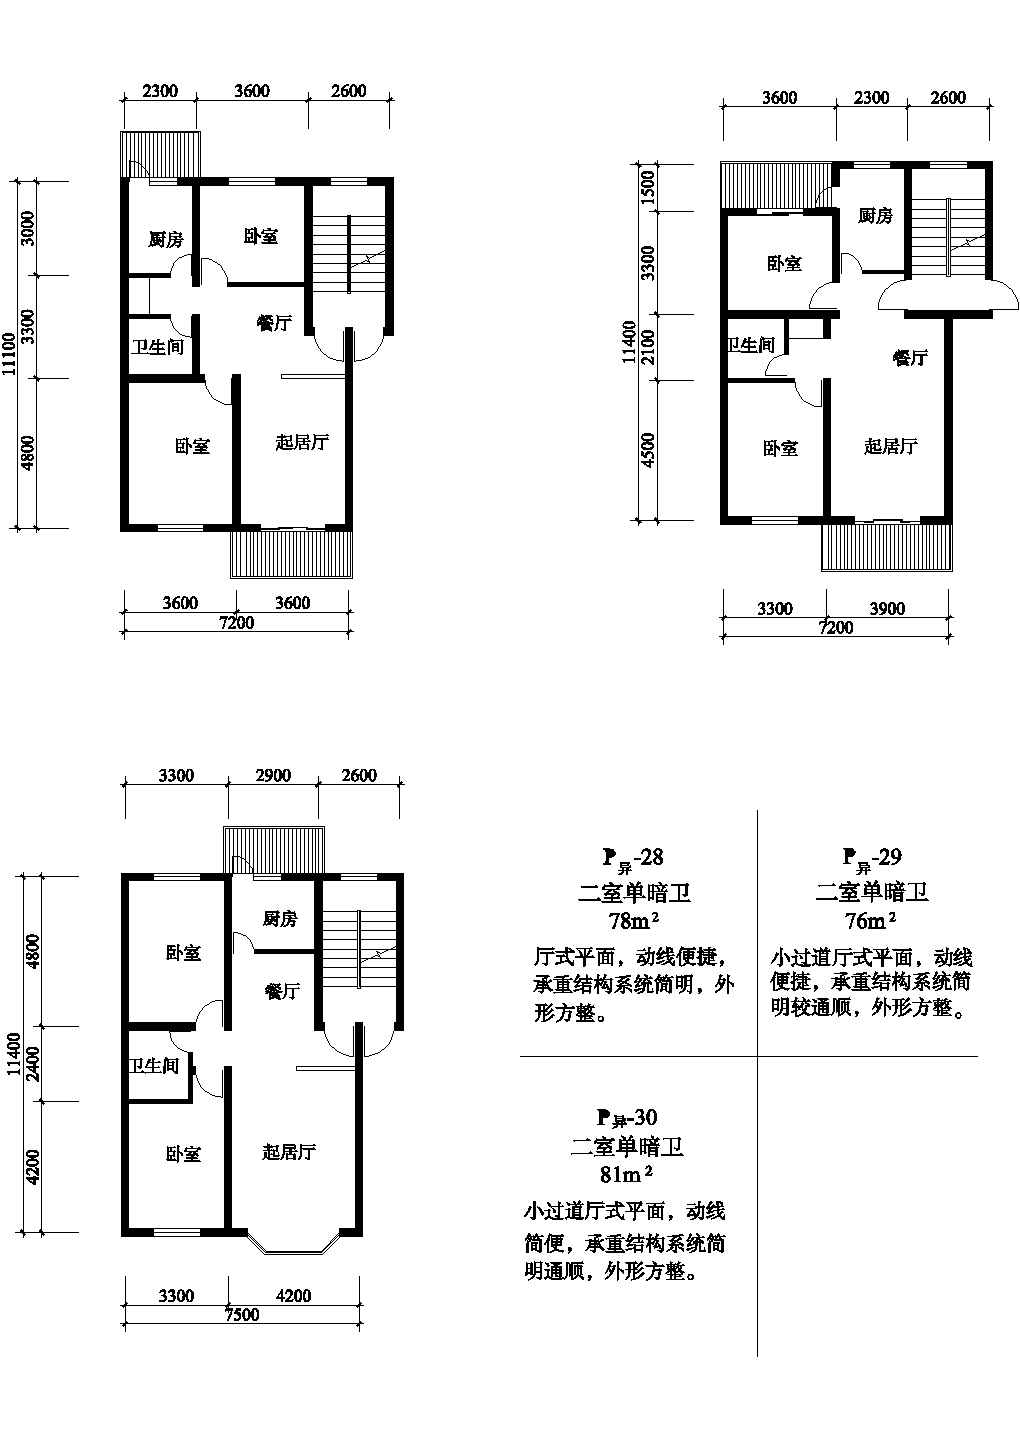 二室81/76/76平方单元式住宅平面图纸